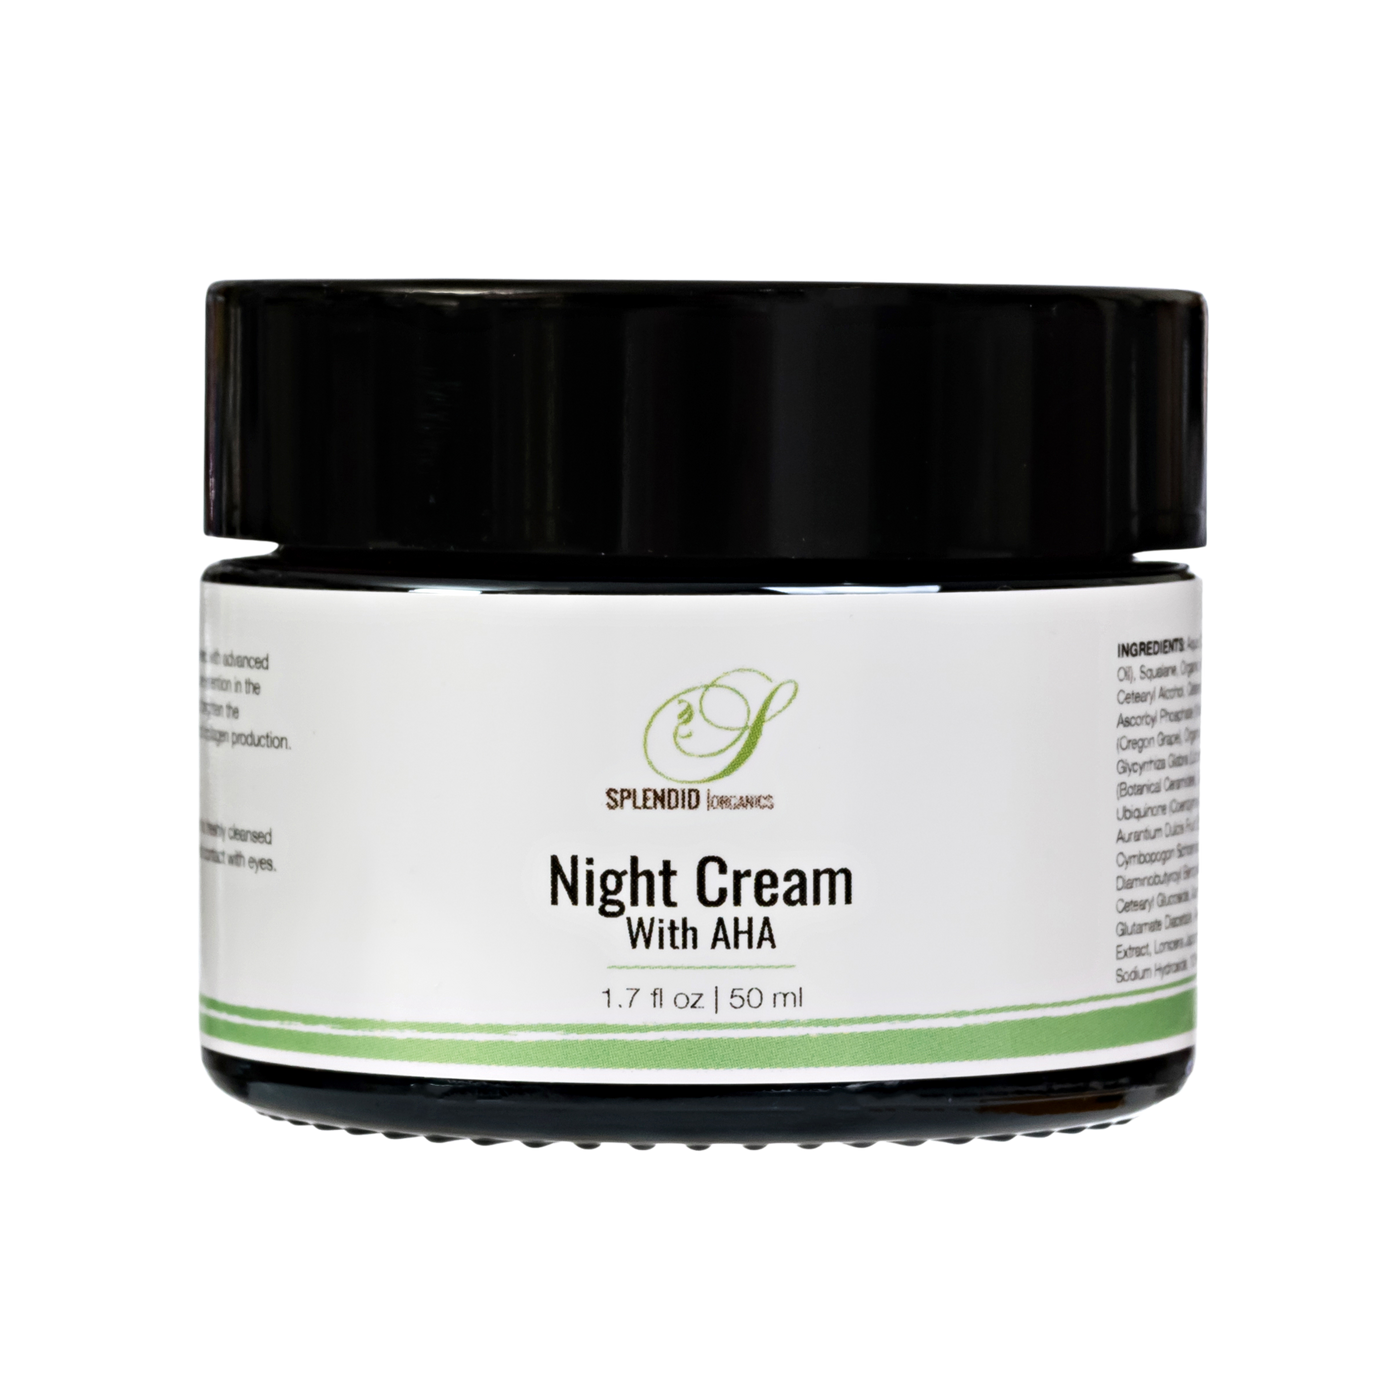 Night cream, night treatment, AHA cream, rejuvenating night cream, brightening cream, anti-age night treatment 